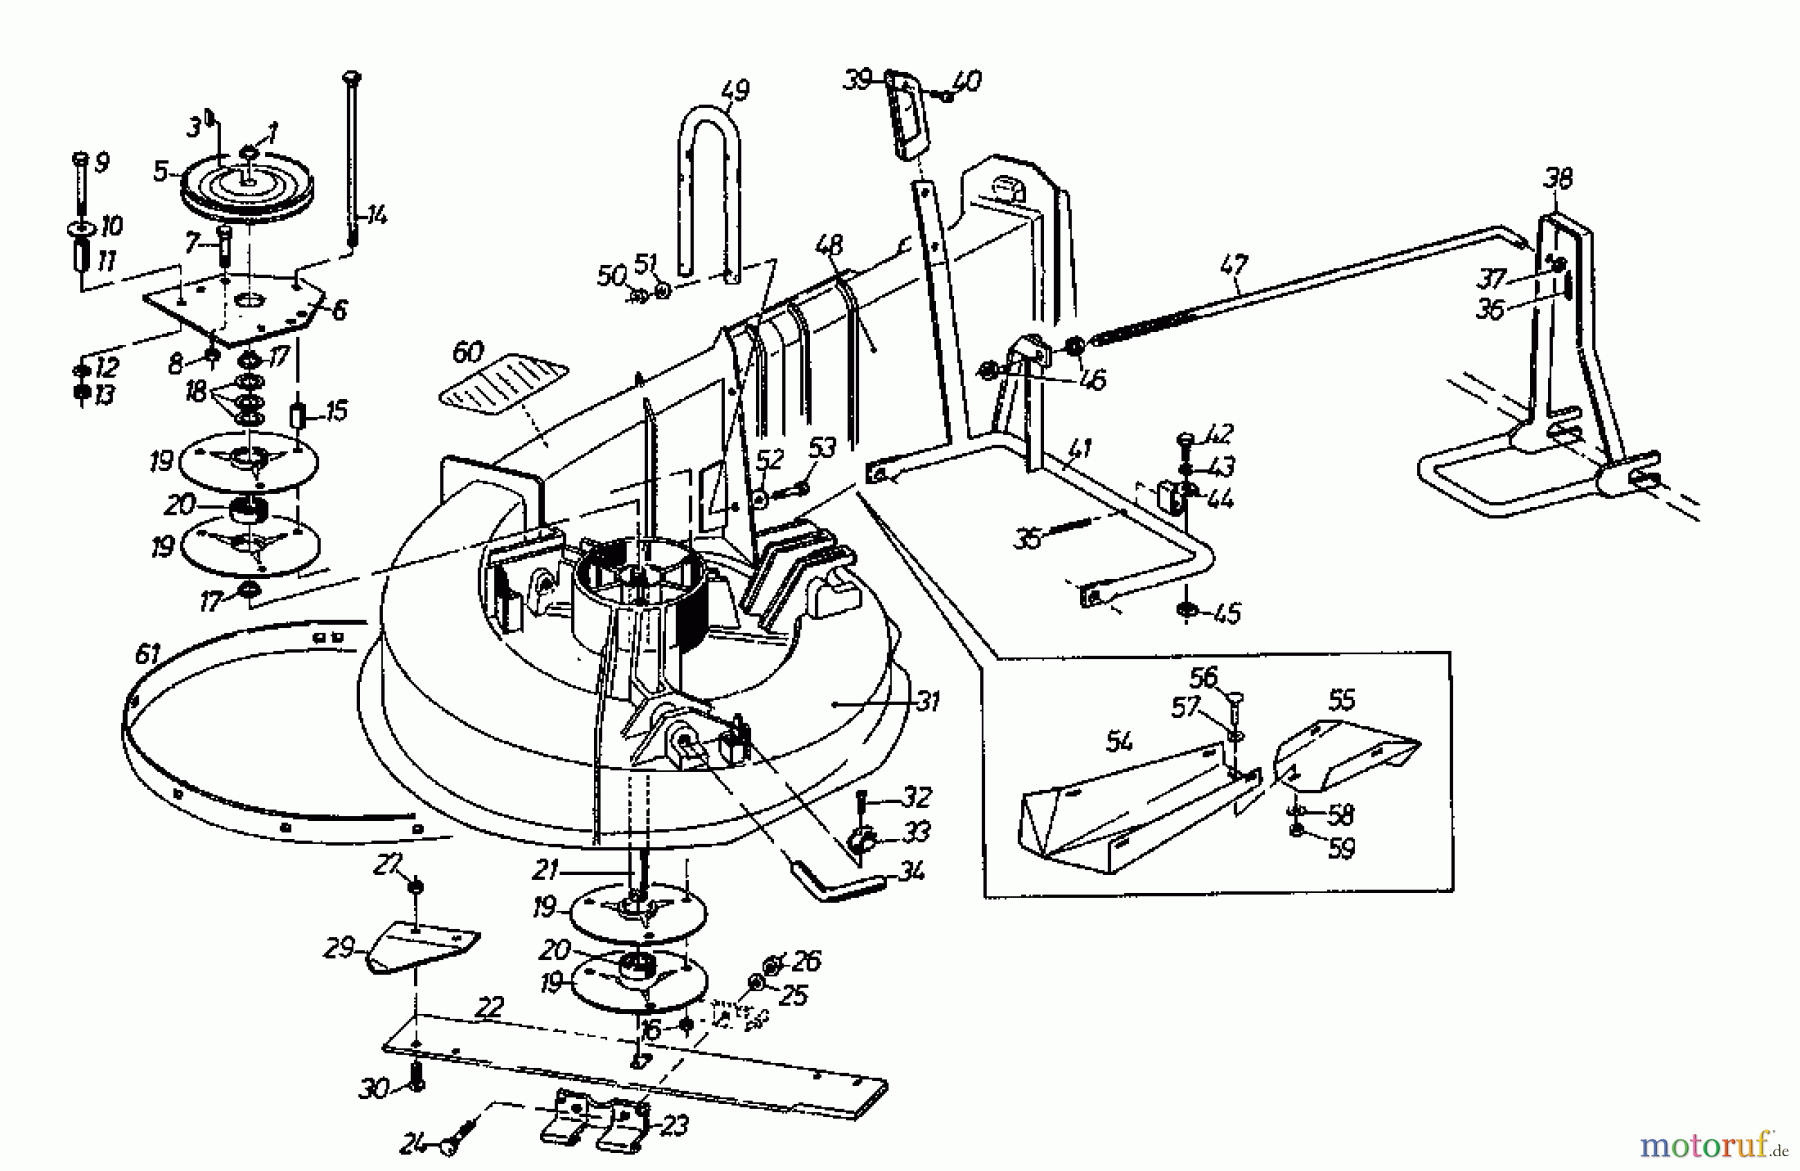  Gutbrod Rasentraktoren Sprint 1002 E 02840.08  (1996) Mähwerk 66cm